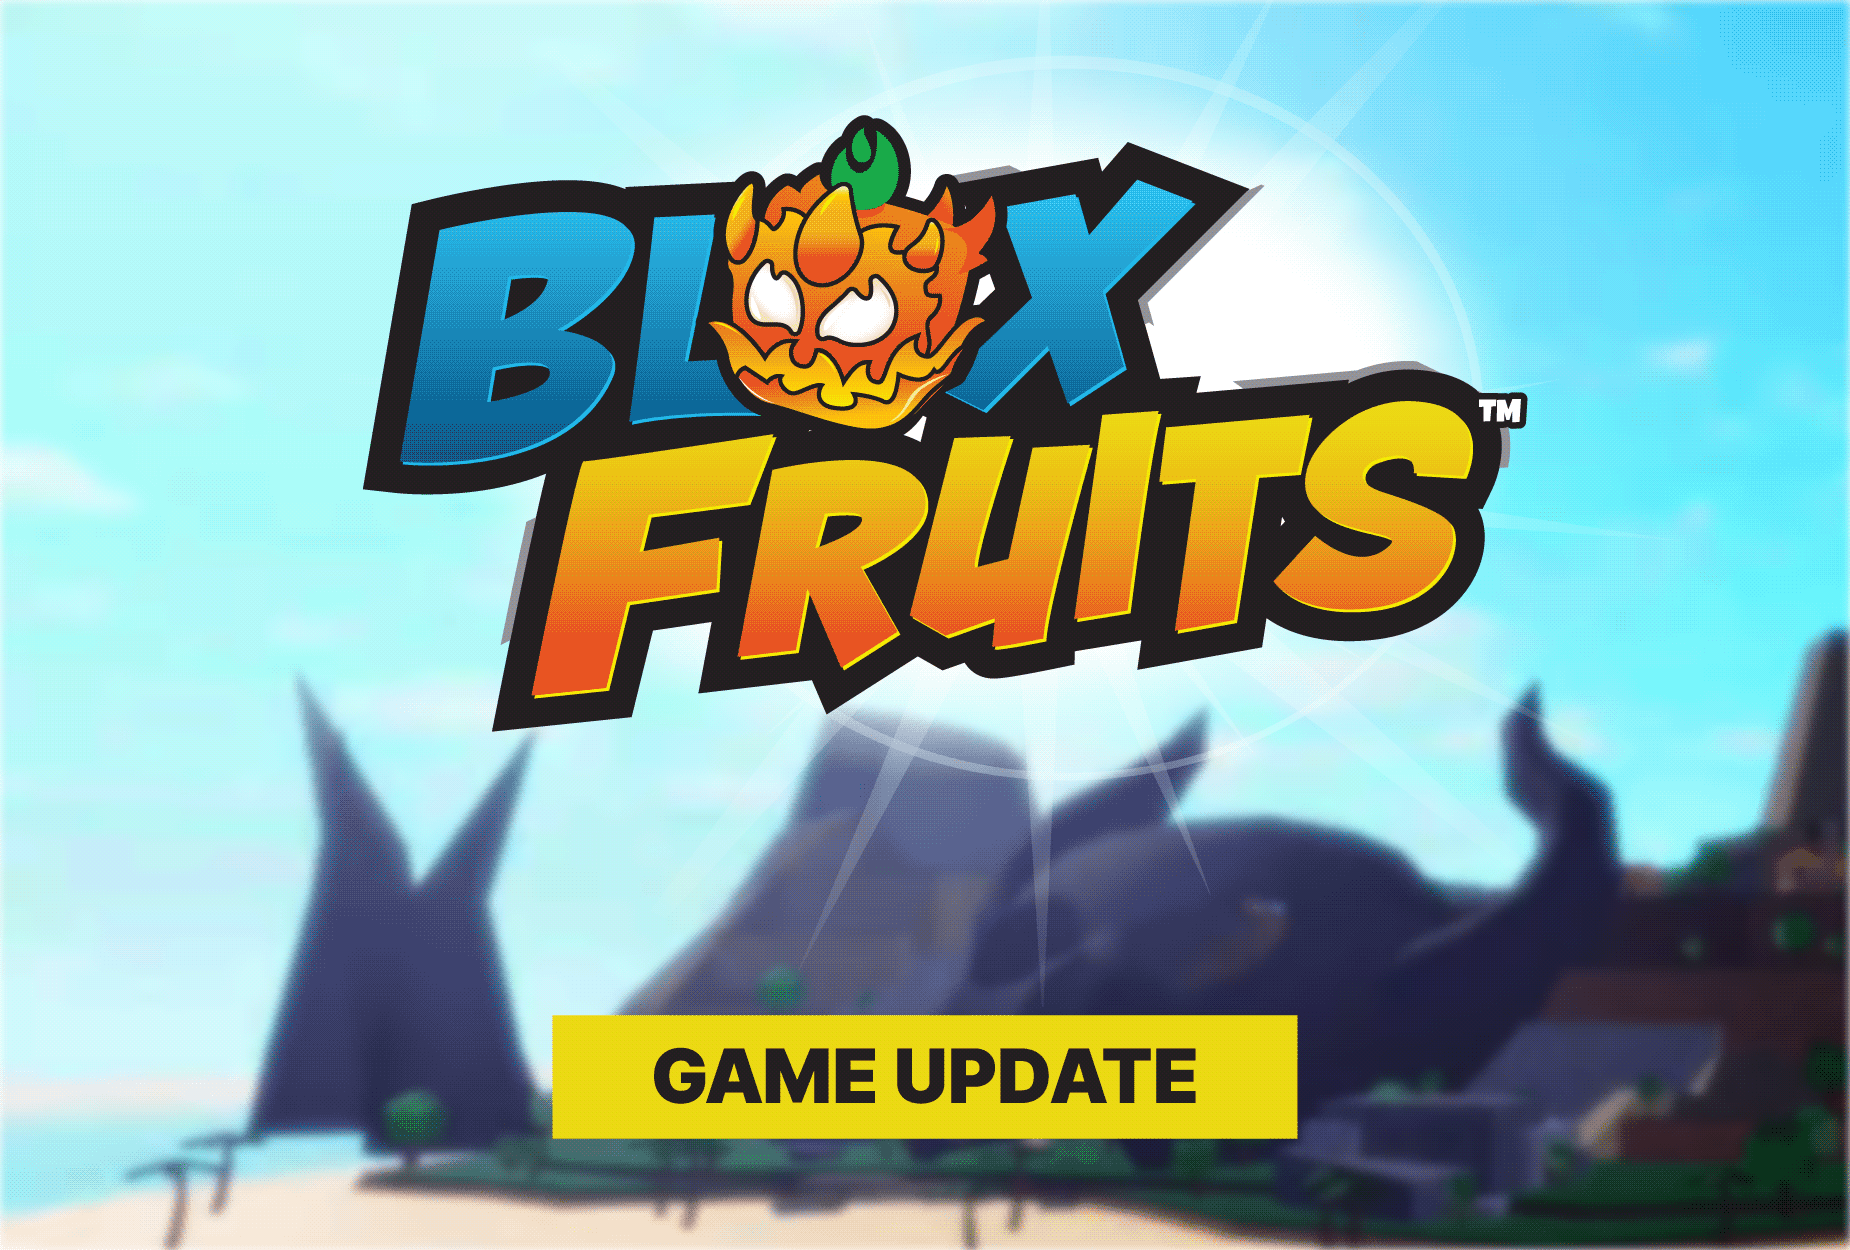 Blox Fruit, Blizzard Fruit on Stock!!